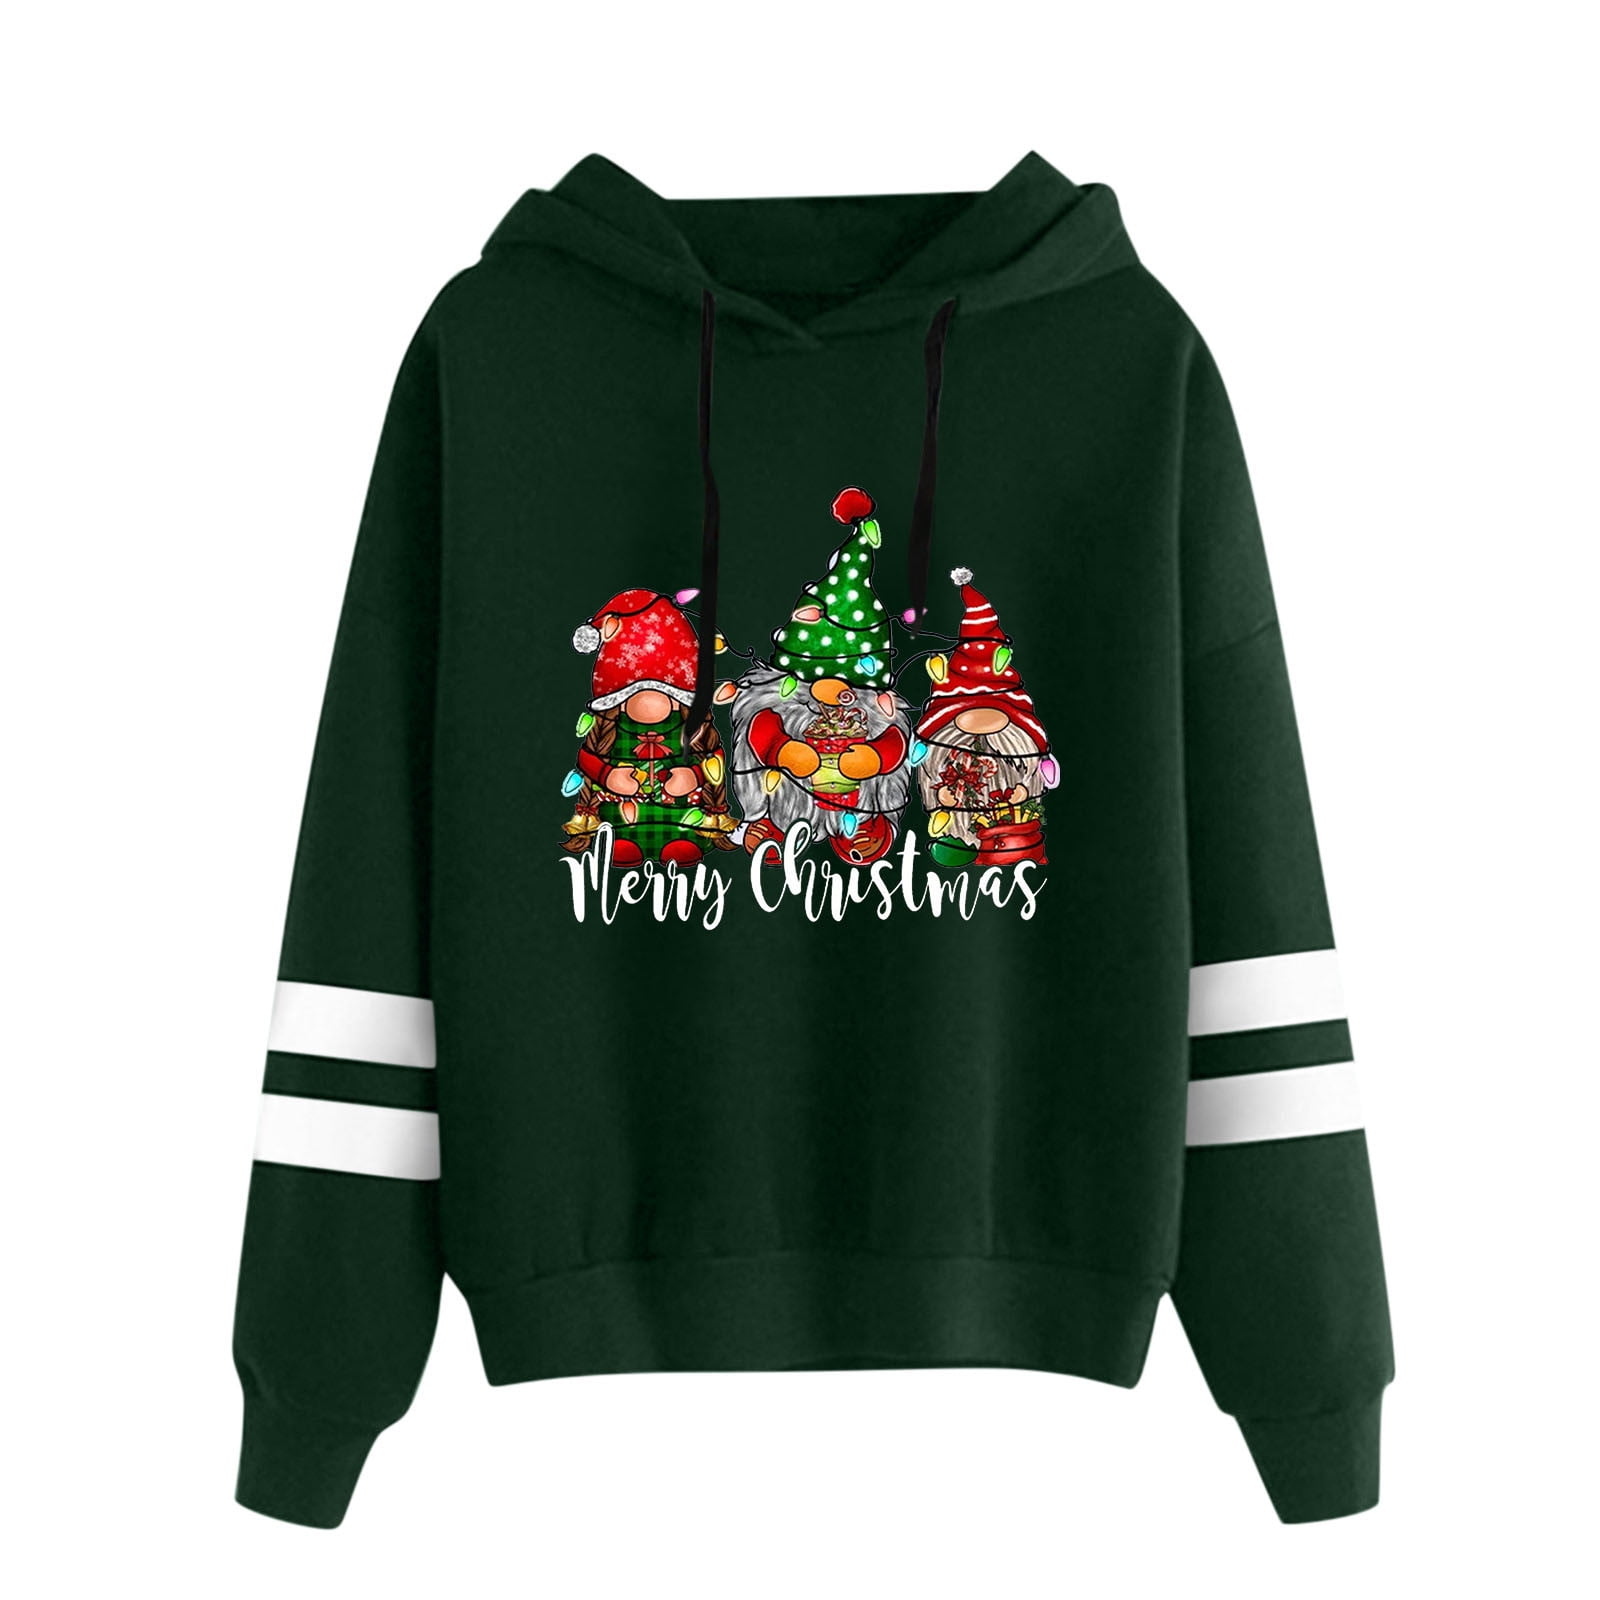 Afsnijden Roei uit Kader adviicd Christmas Womens Light Weight Sweat Shirts Women Christmas Casual  Loose Christmas Gnome Print Hooded Long Zipper Sweater Dress - Walmart.com